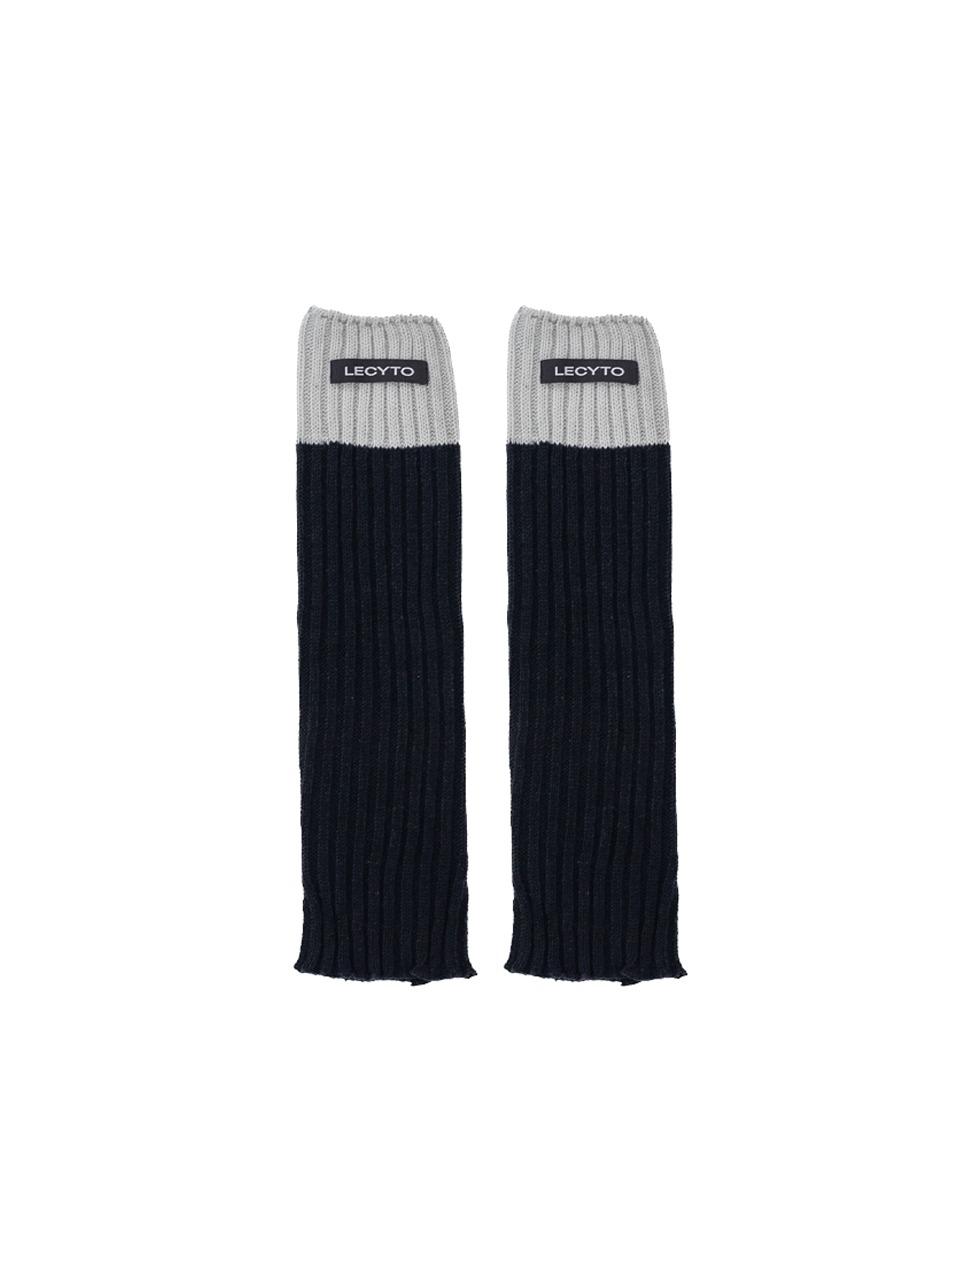 LECYTO - LONG KNIT COMBI LEG WARMER (BLACK)